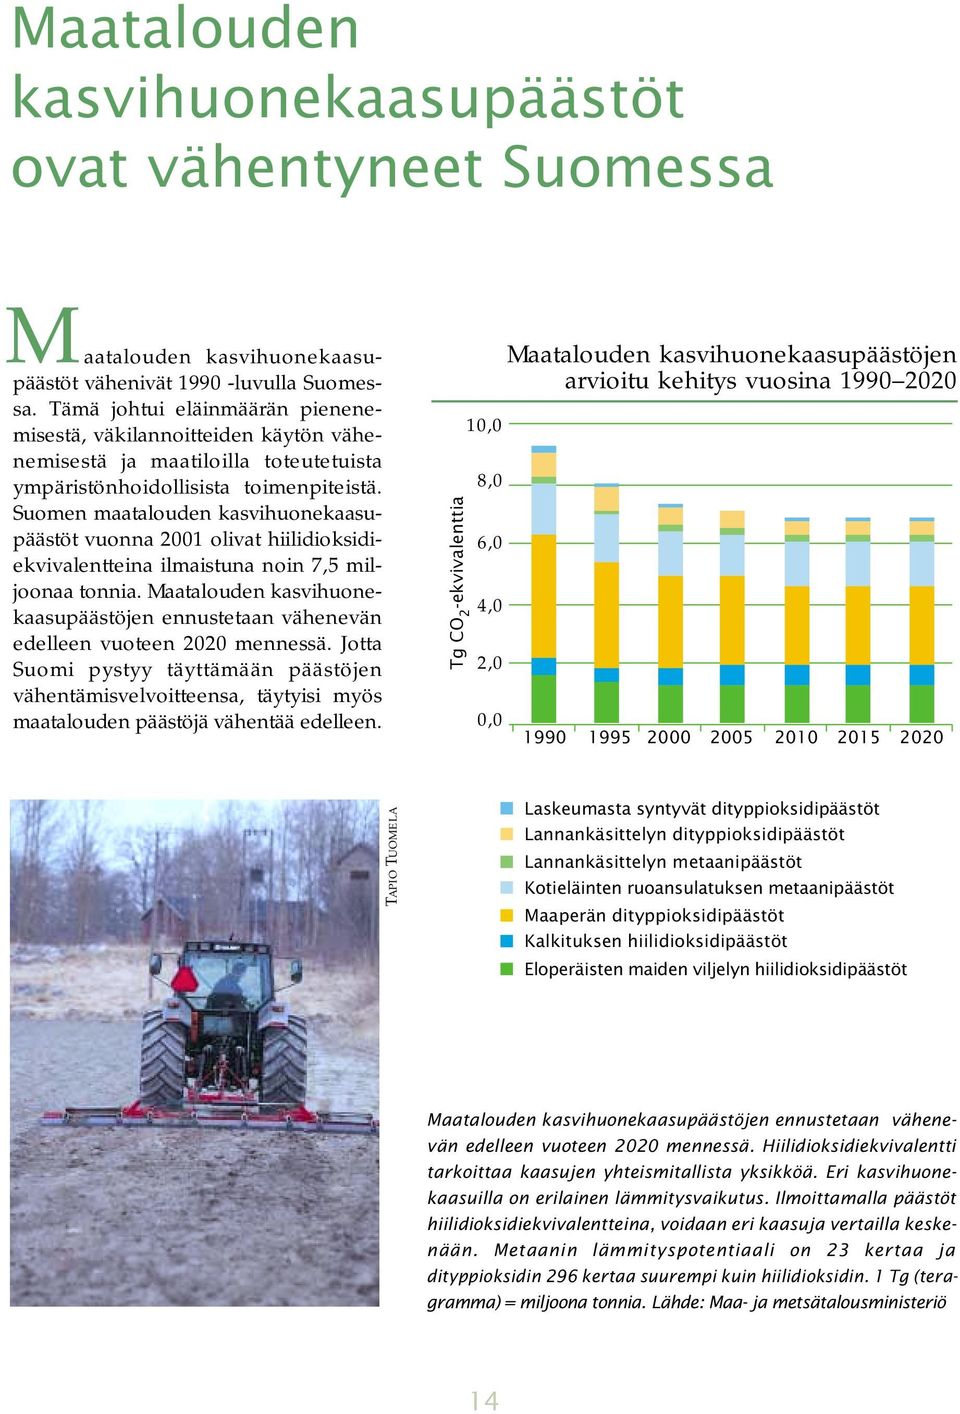 Suomen maatalouden kasvihuonekaasupäästöt vuonna 2001 olivat hiilidioksidiekvivalentteina ilmaistuna noin 7,5 miljoonaa tonnia.